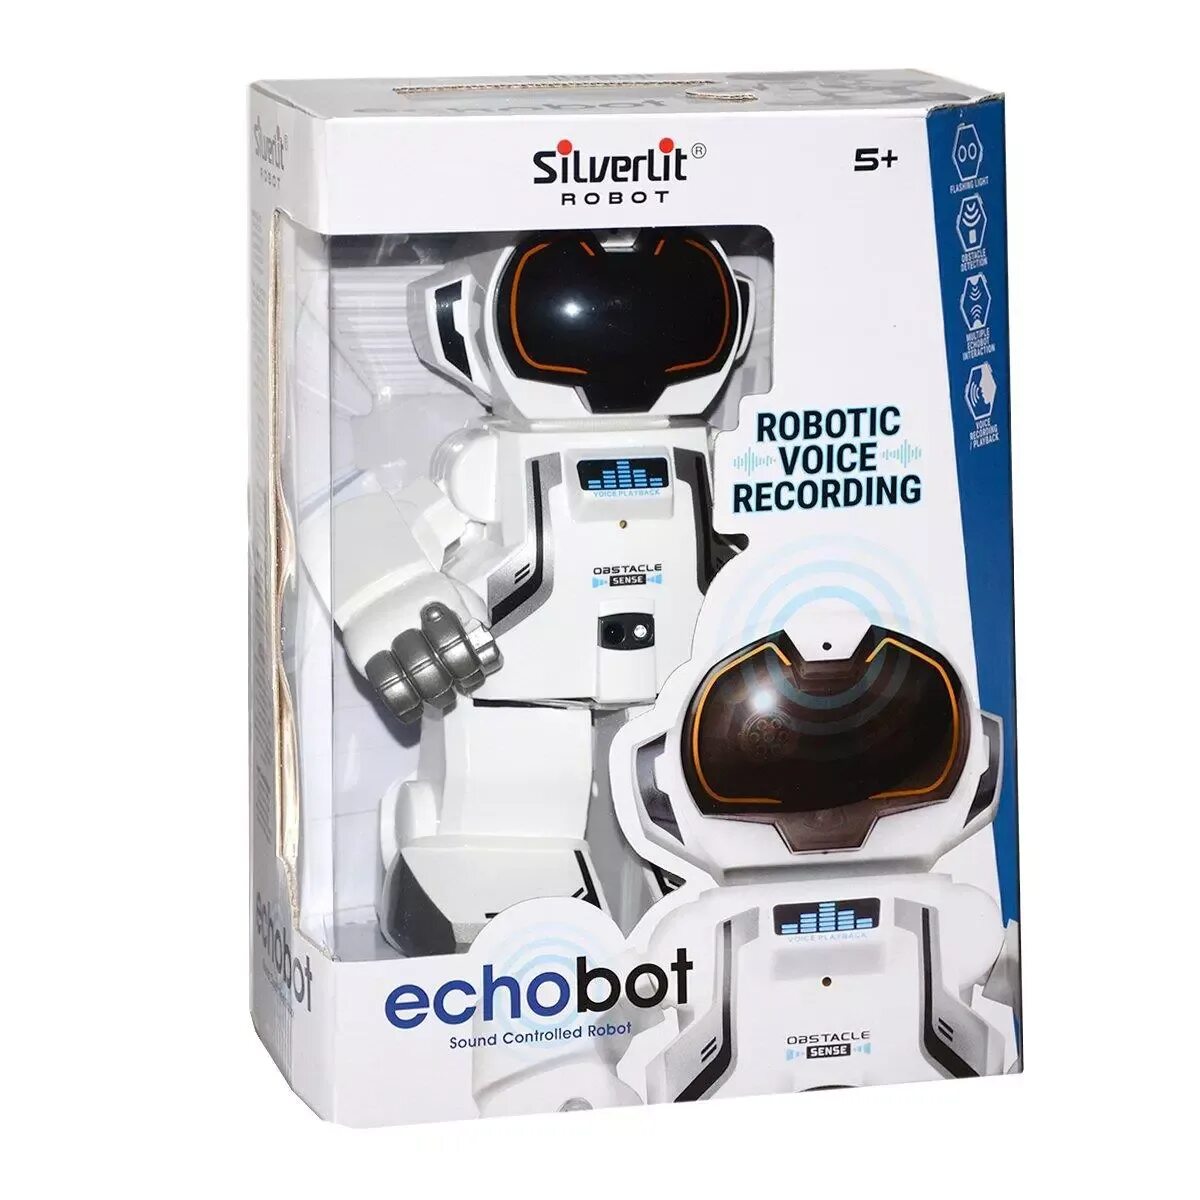 Эхо бот. Робот Echo. Echobot робот игрушка. Silverlit "Echo". Silverlit робот инструкция.